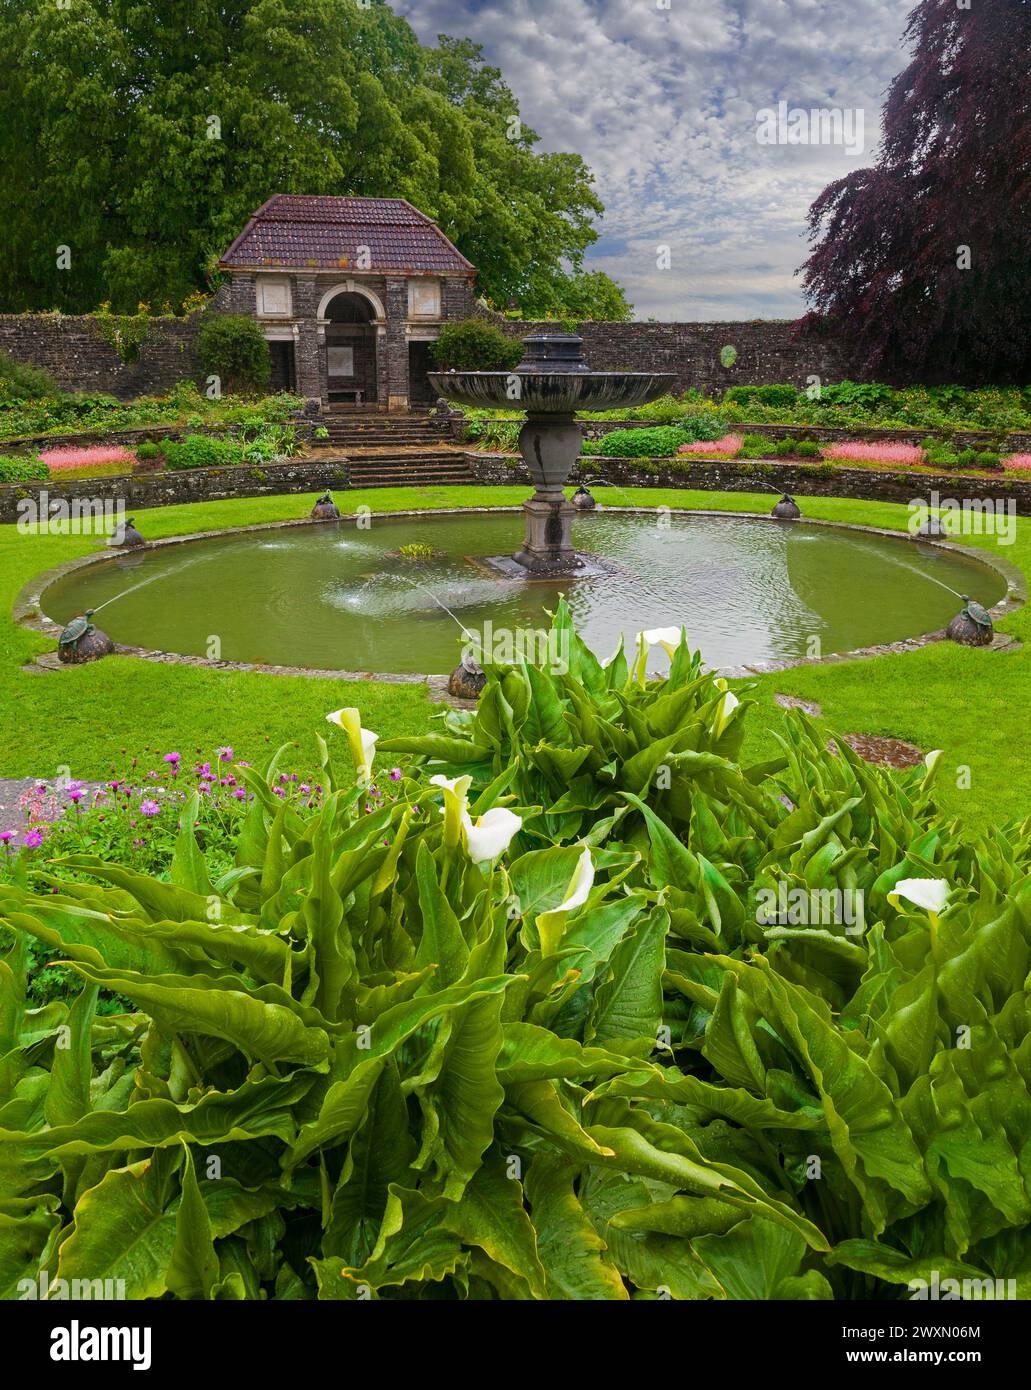 Der Sunken Garden in den italienischen Gärten in Heywood bei Ballinakill im County Laois, Irland, entworfen von Sir Edwin Lutyens im Jahr 1912. Stockfoto